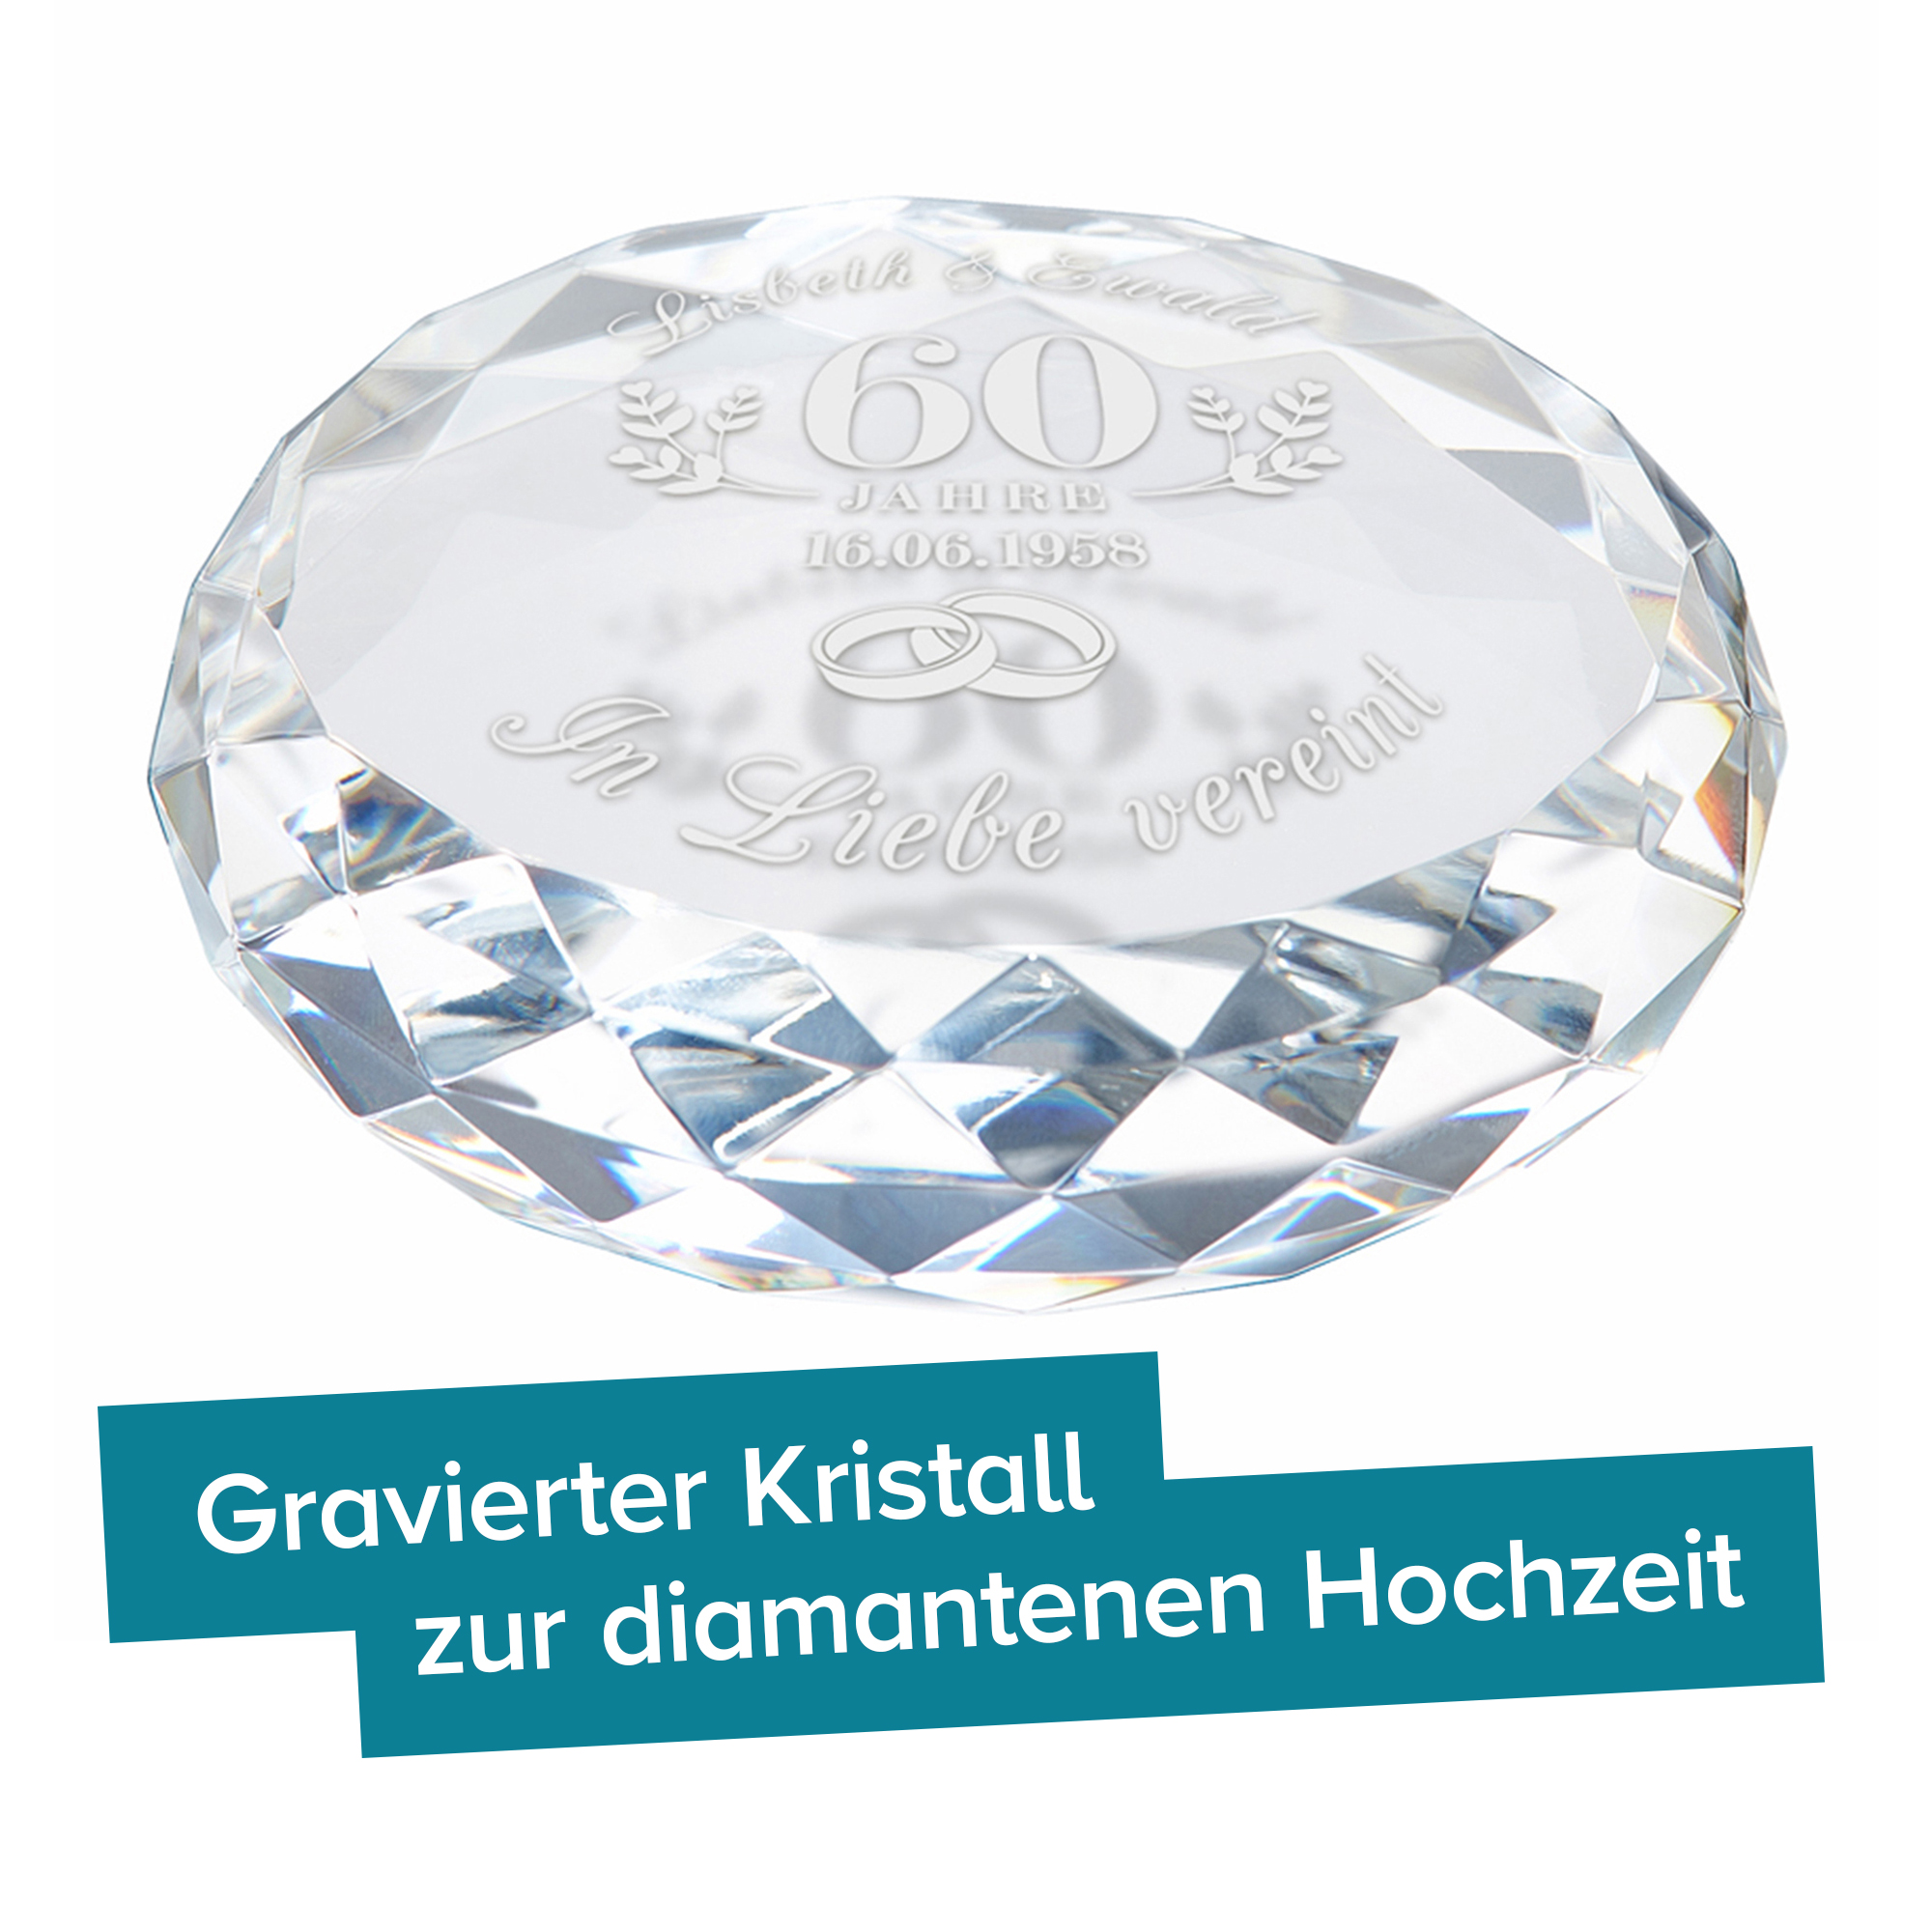 Kristall mit Gravur zur diamantenen Hochzeit 4131 - 3